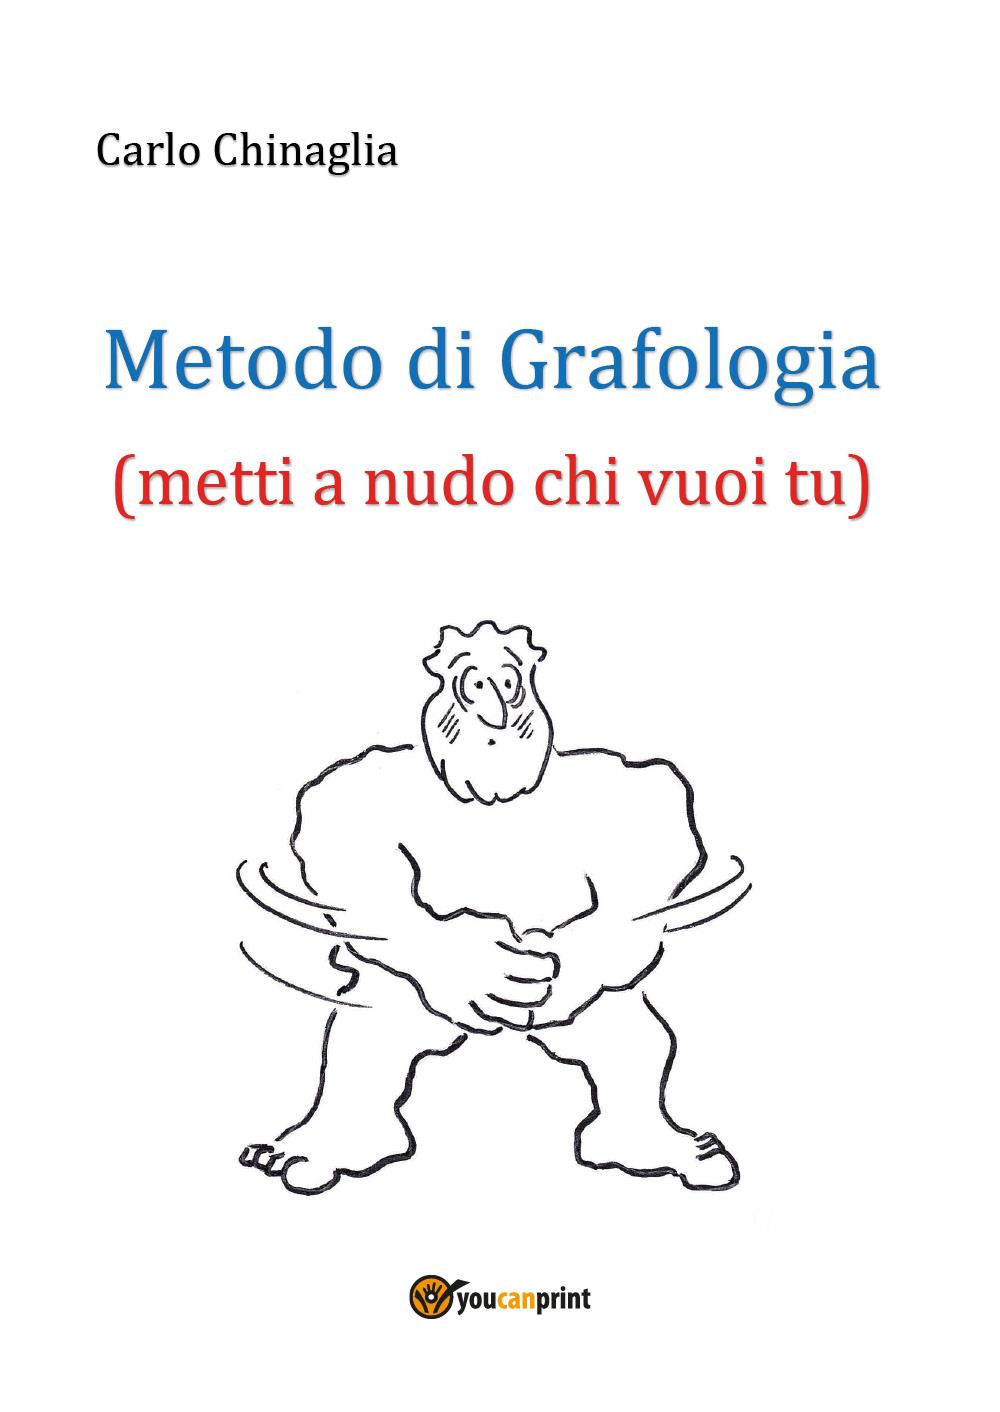 Metodo di Grafologia (metti a nudo chi vuoi tu)